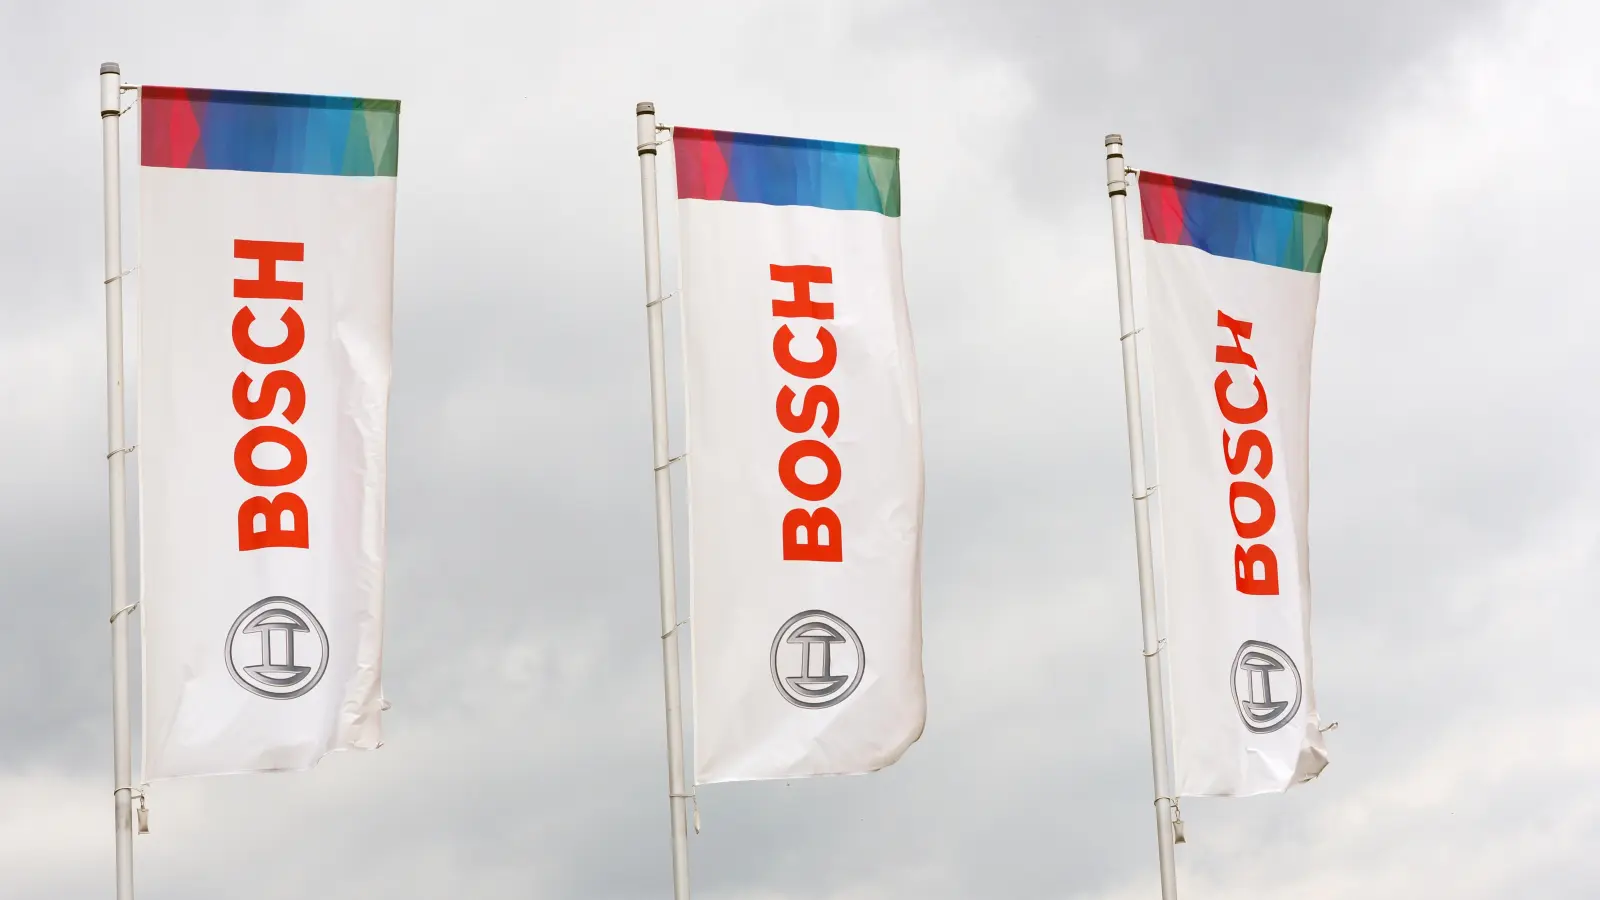 Die Bosch-Fahnen flattern vor dem Werkstor im Ortsteil Brodswinden. Es kommen härtere Zeiten auf den Ansbacher Standort zu. (Archivfoto: Jim Albright)